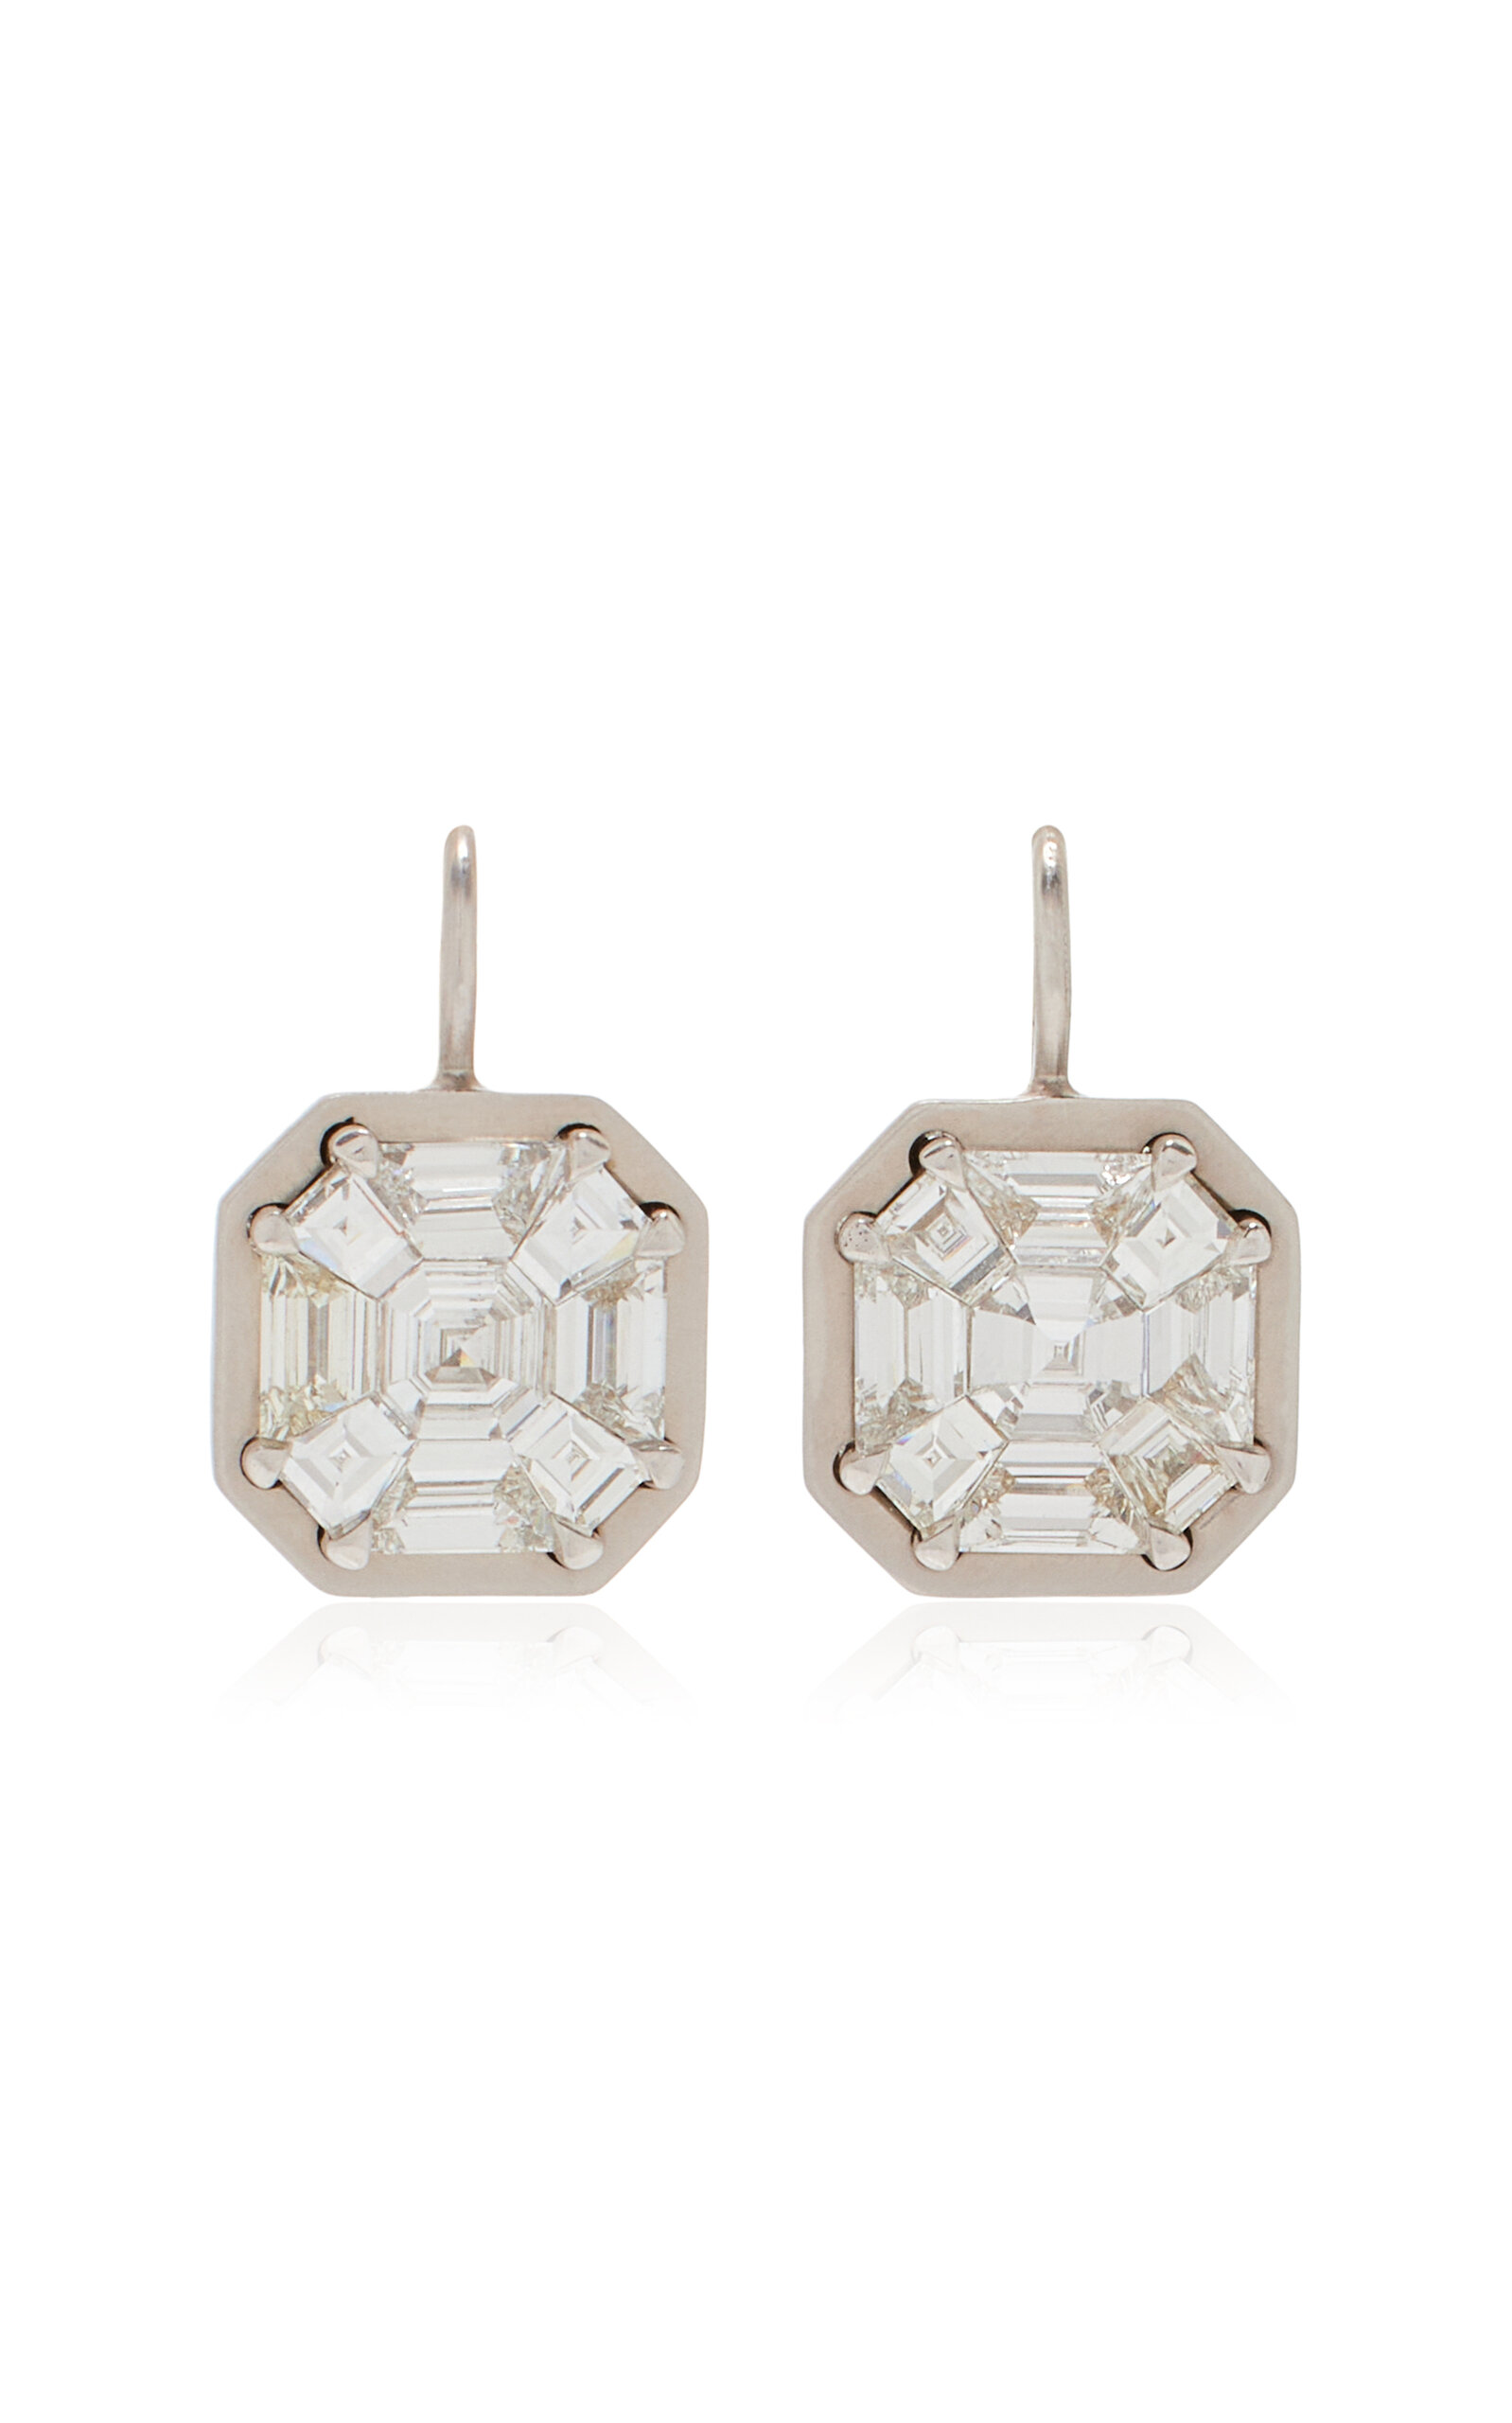 18k White Mosaic Diamond Earrings on Wire